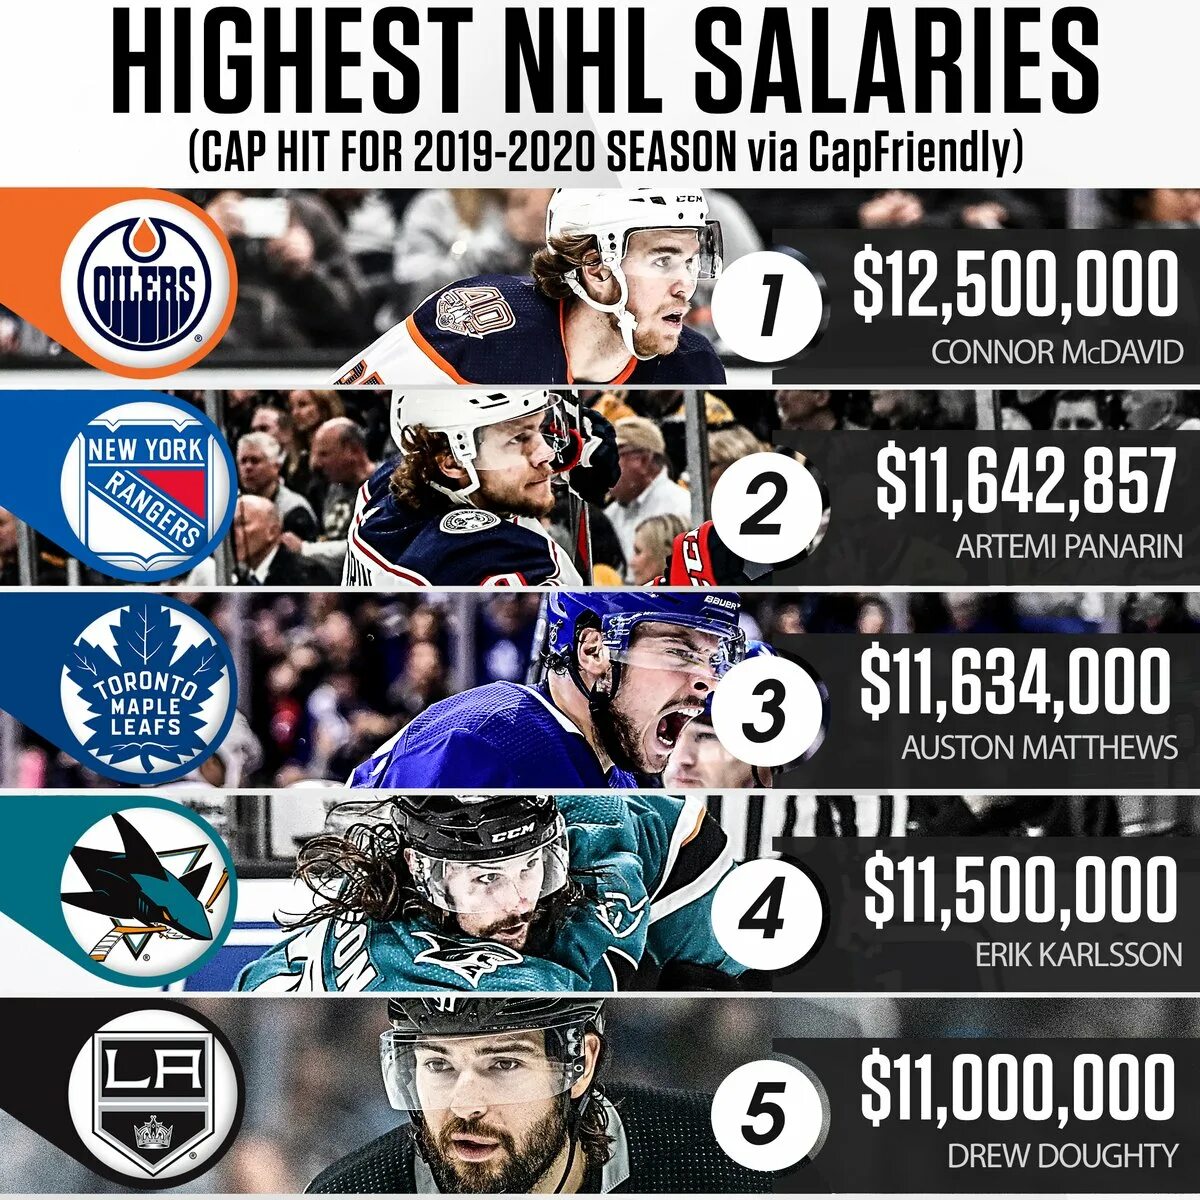 Самые высокооплачиваемые хоккеисты НХЛ. Самый высокооплачиваемый хоккеист. Самый высокооплачиваемый игрок NHL. Самые высокие зарплаты в НХЛ.